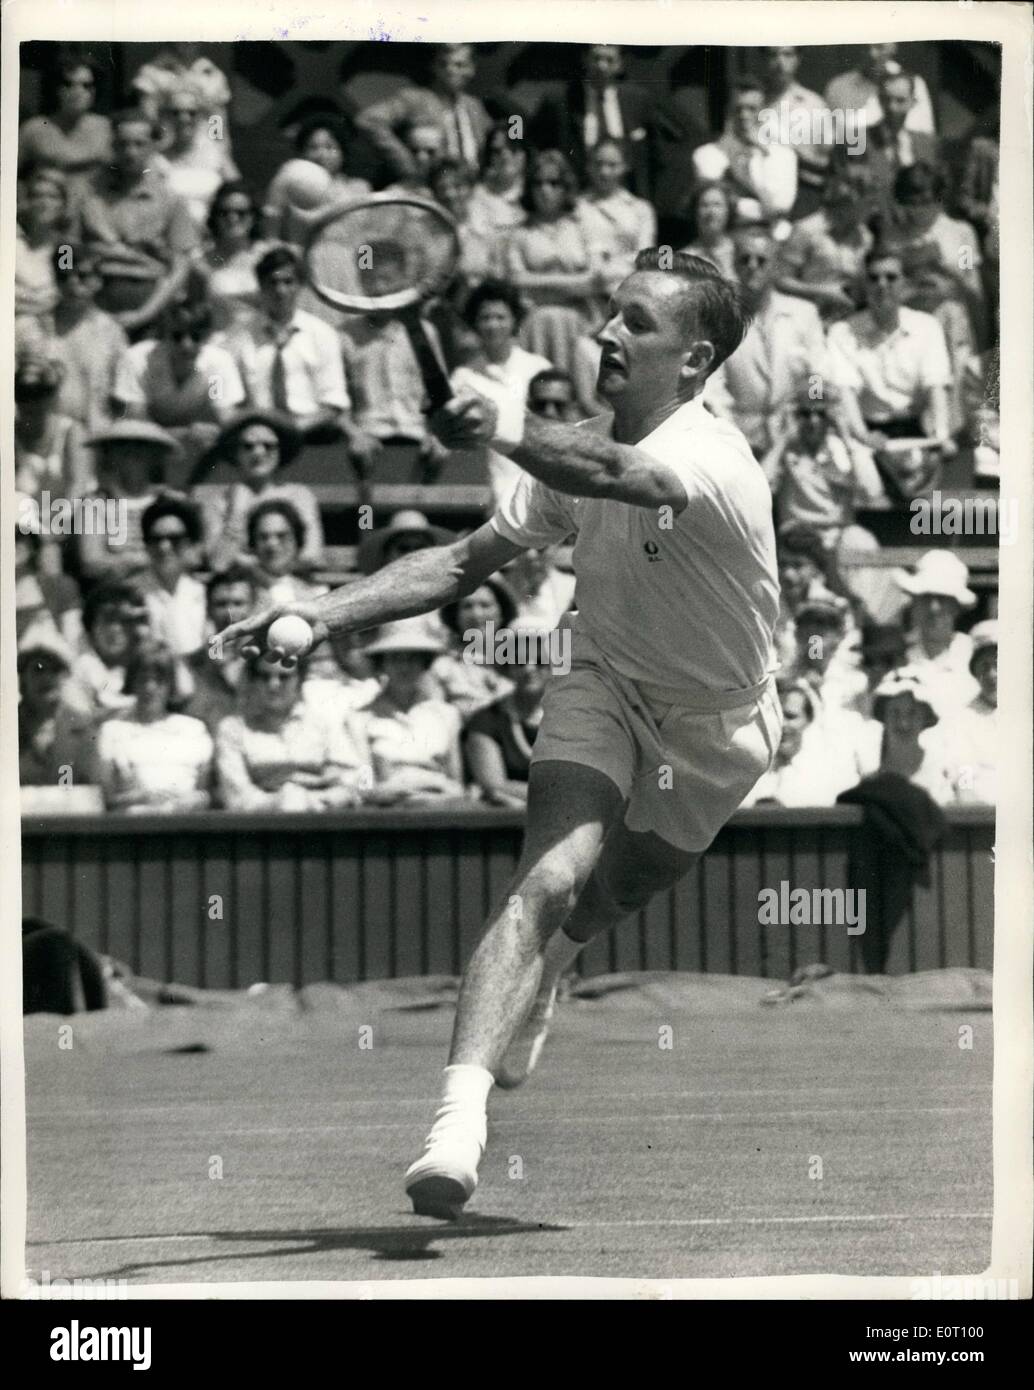 Giugno 06, 1960 - campionati di Wimbledon - Primo giorno. La Rod Laver di Australis - in gioco. La foto mostra la Rod Laver (Australia) in gioco durante la sua corrispondenza con G.L. Ward (GB) all'apertura del 1960 Torneo di Wimbledon oggi. Laver è finalista della gara dell'anno scorso. Foto Stock